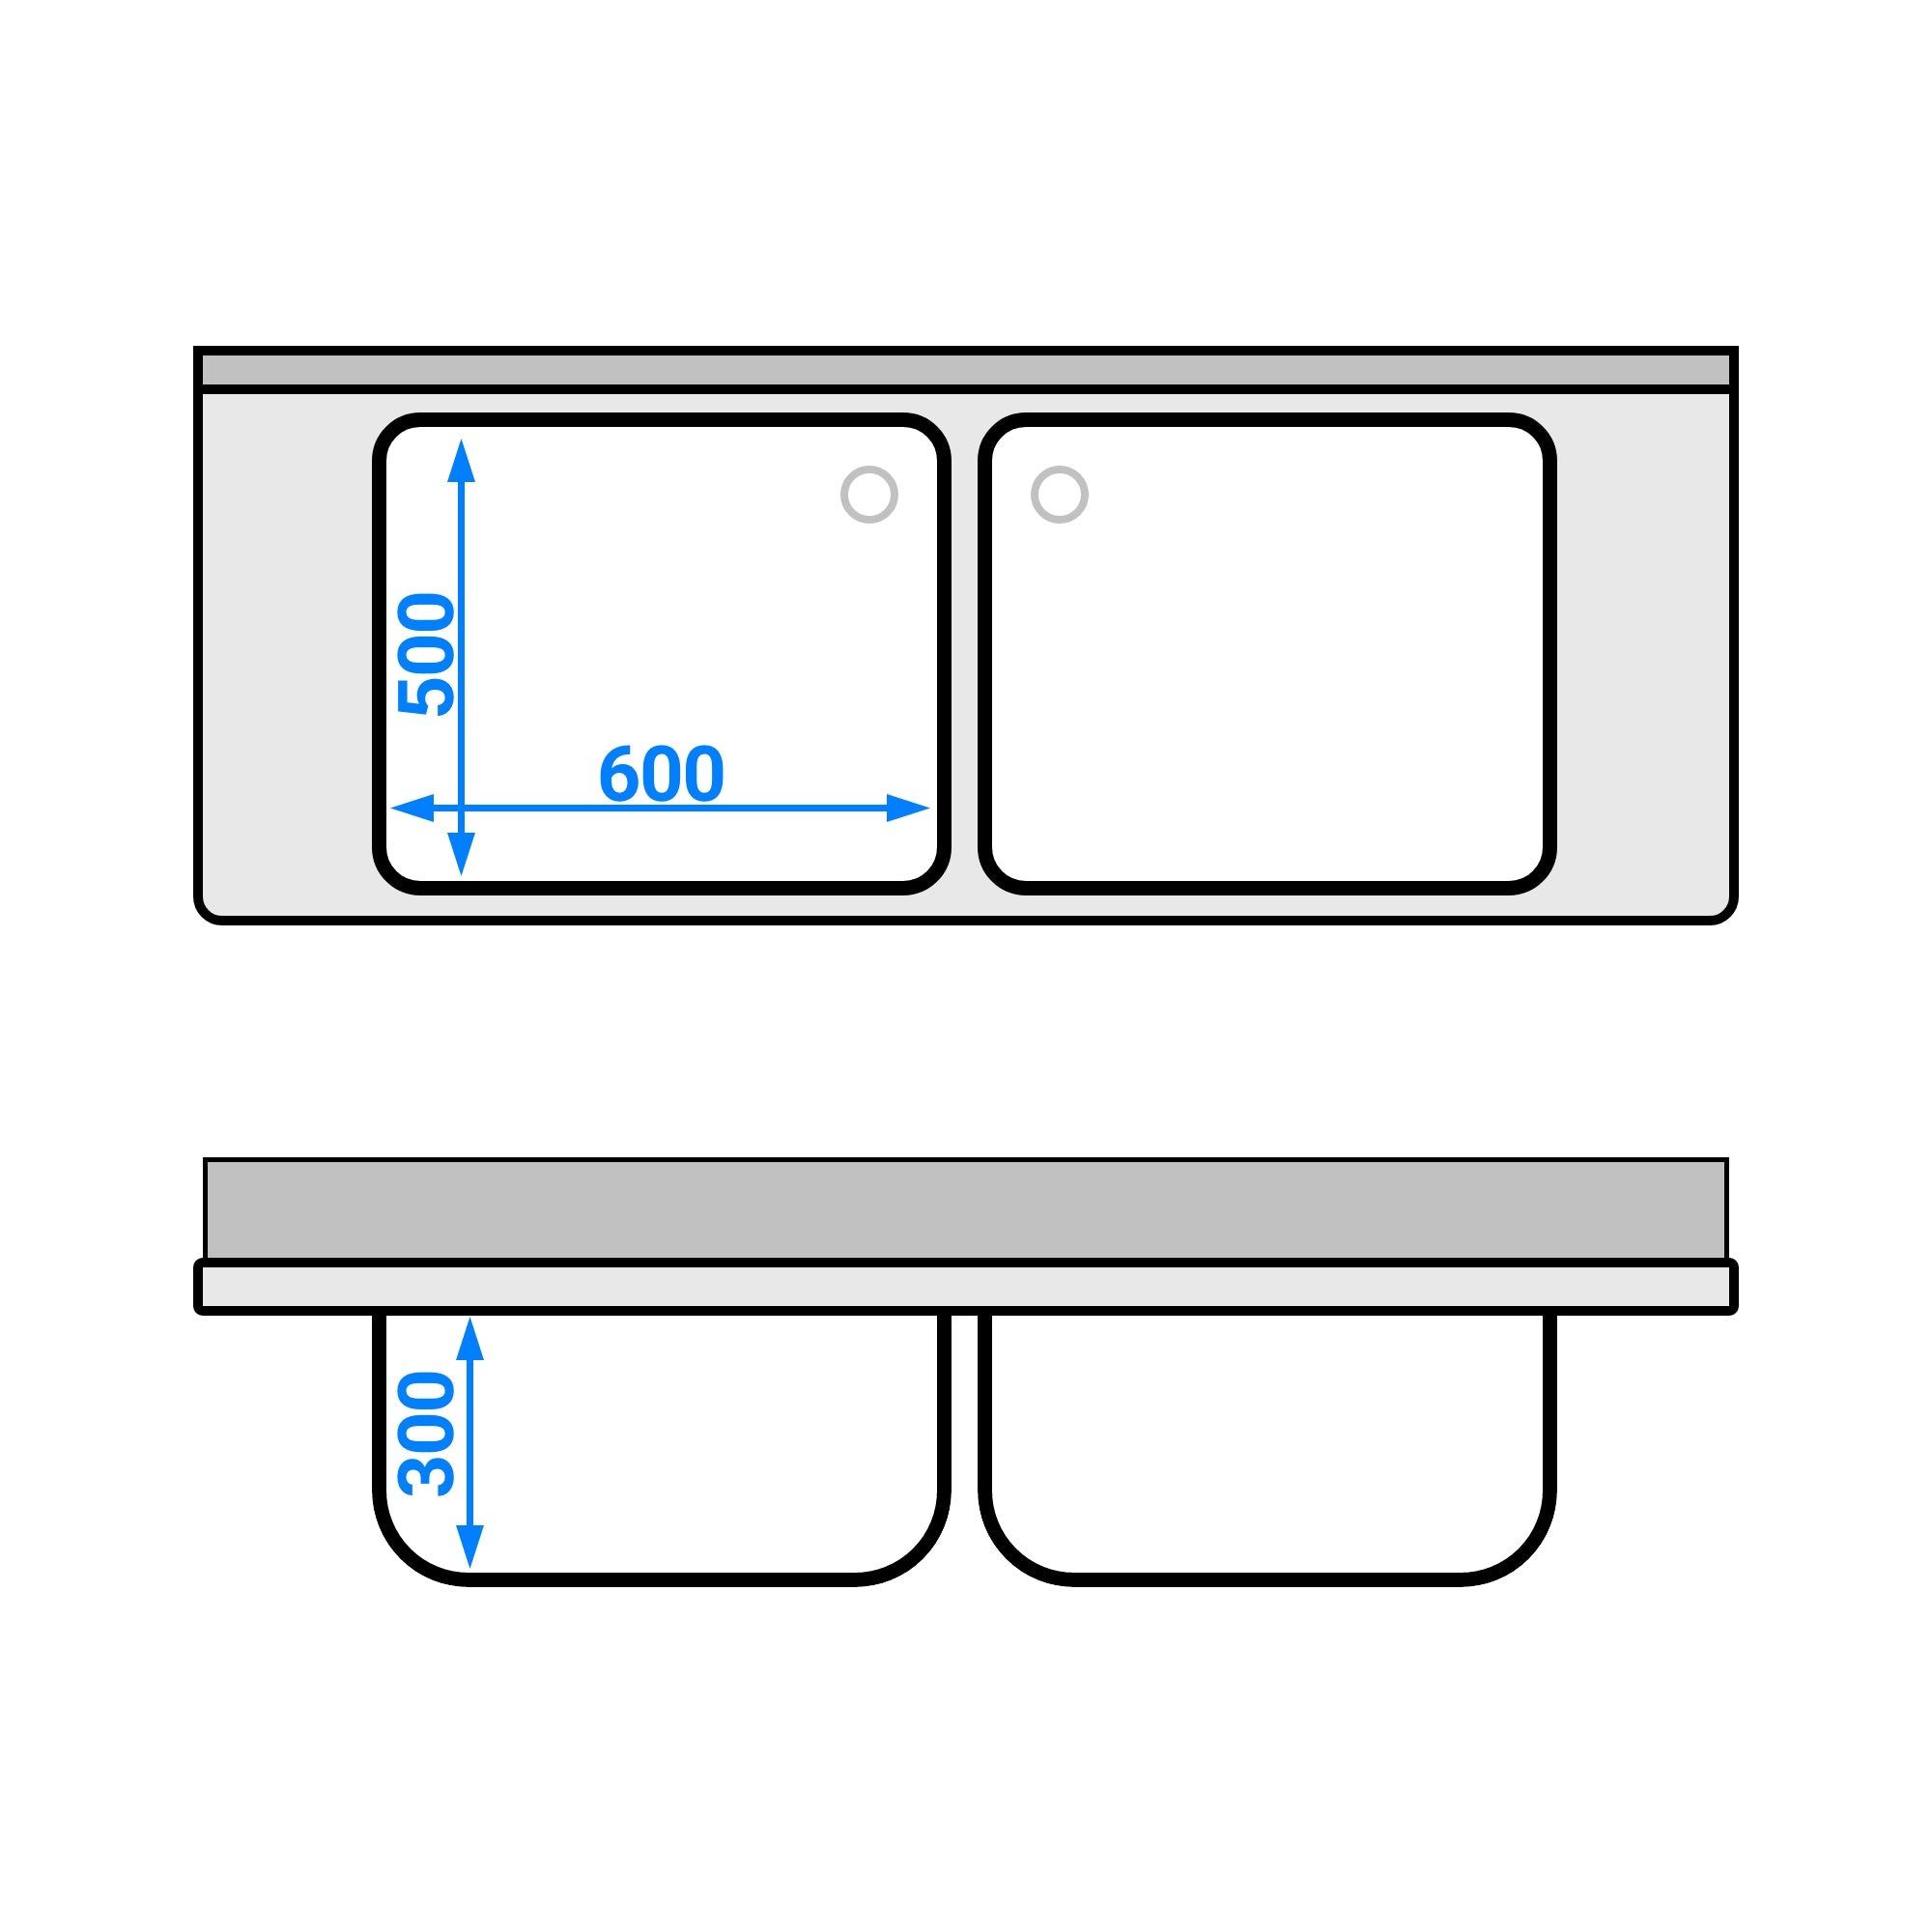 Vaskeborde med underhylde 1,6 m - 2 vaske i midten L 50 x W 40 x D 25 cm